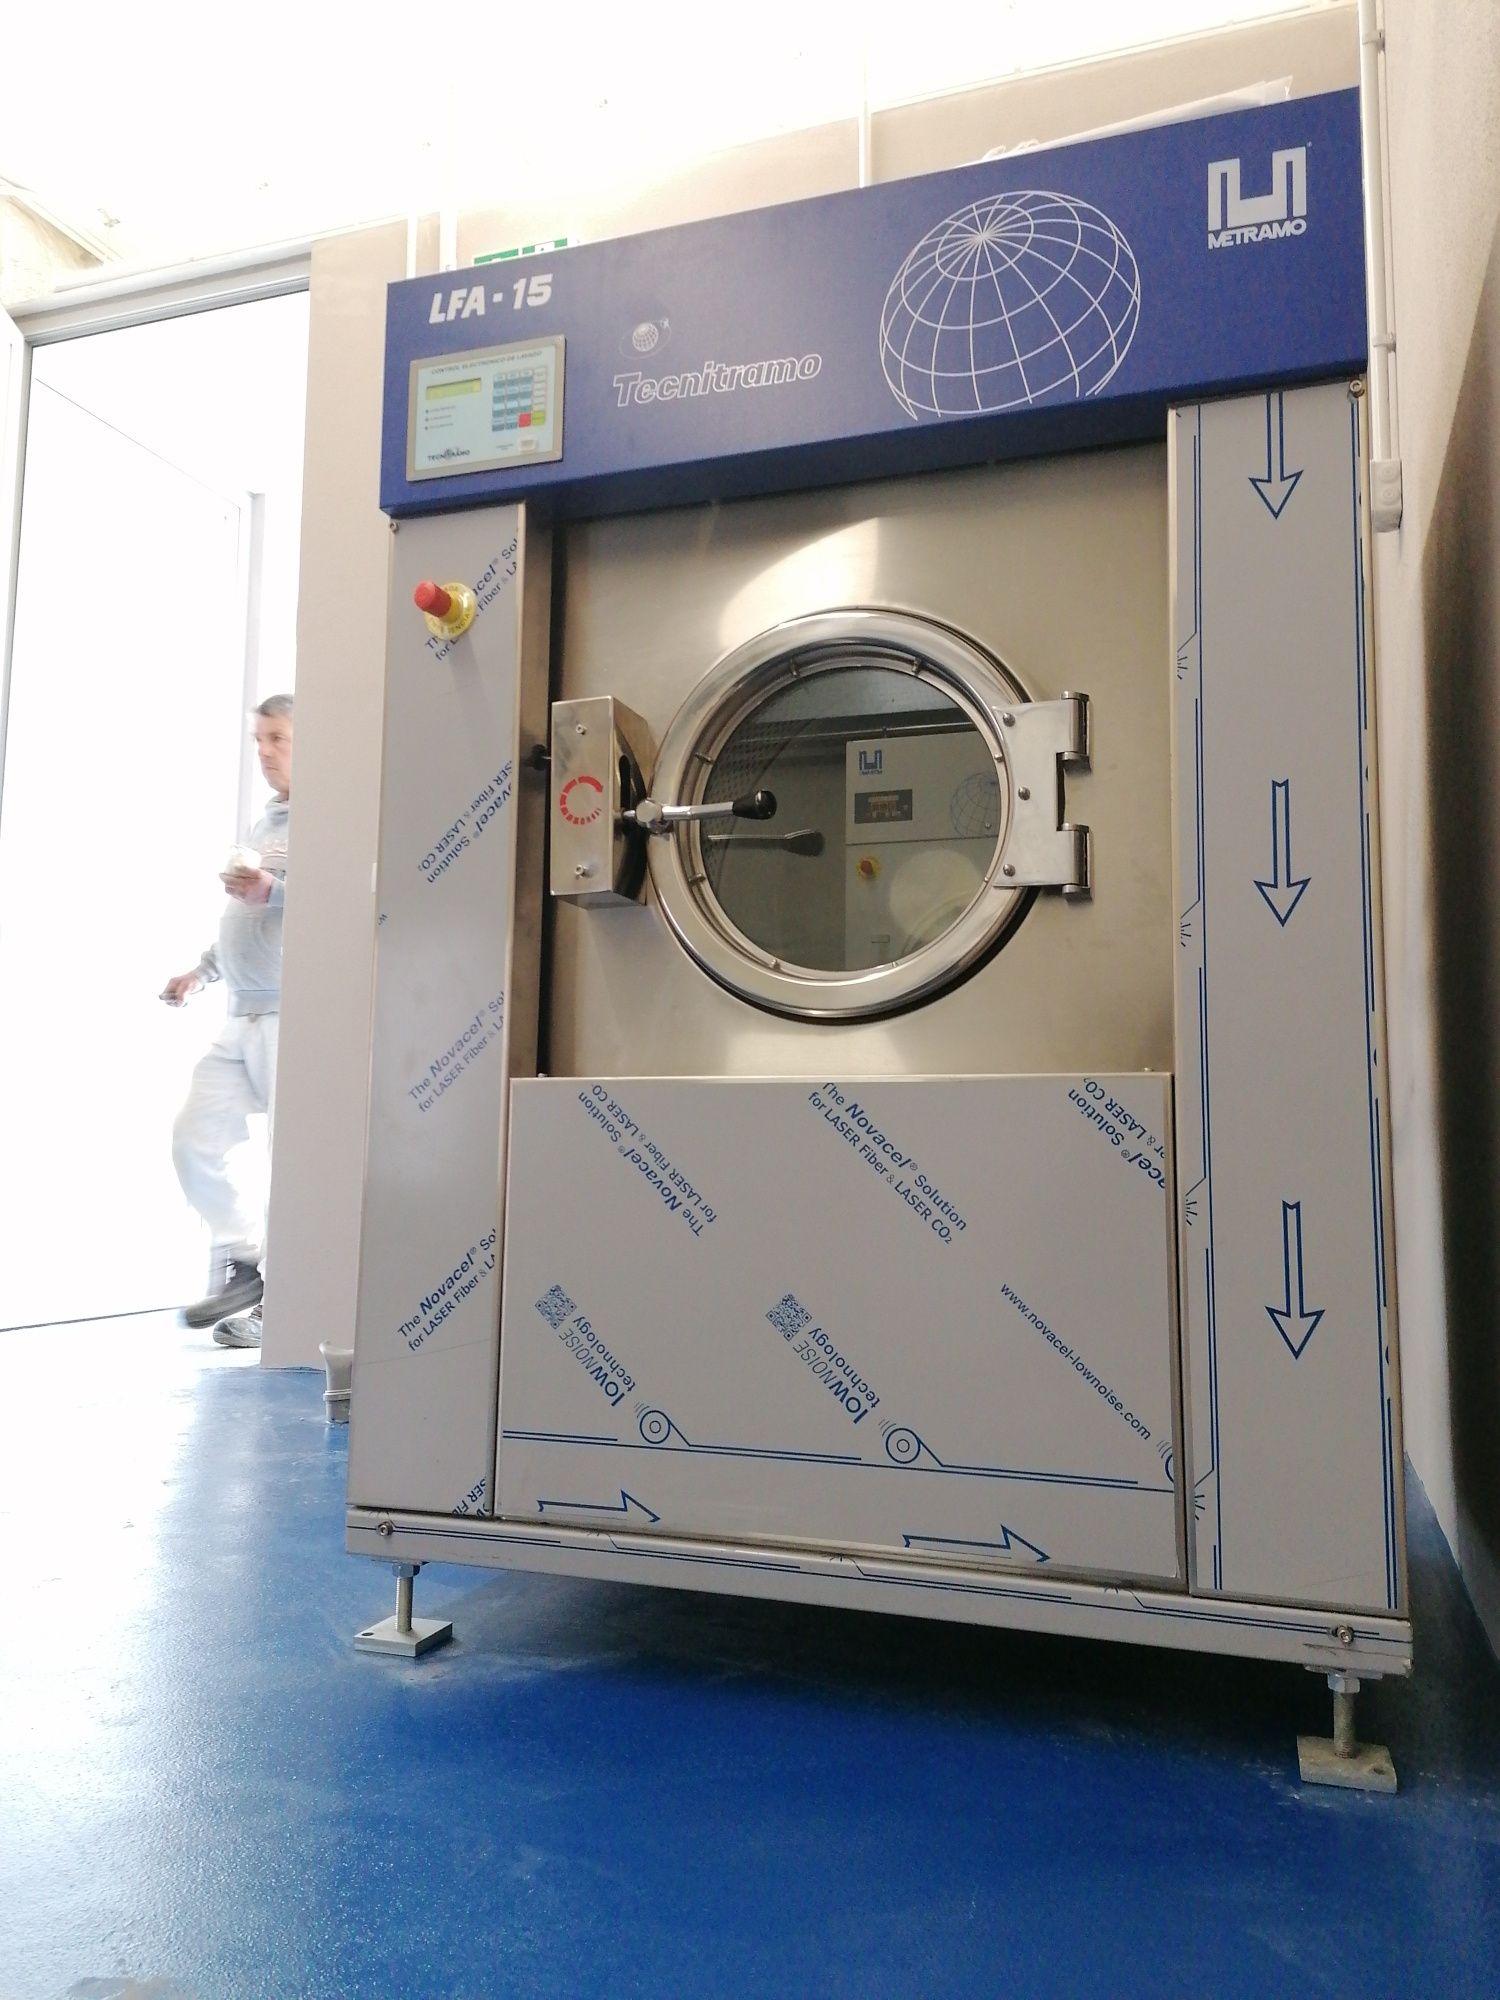 LFA 15 ocasião máquina de lavar roupa industrial ou Self service